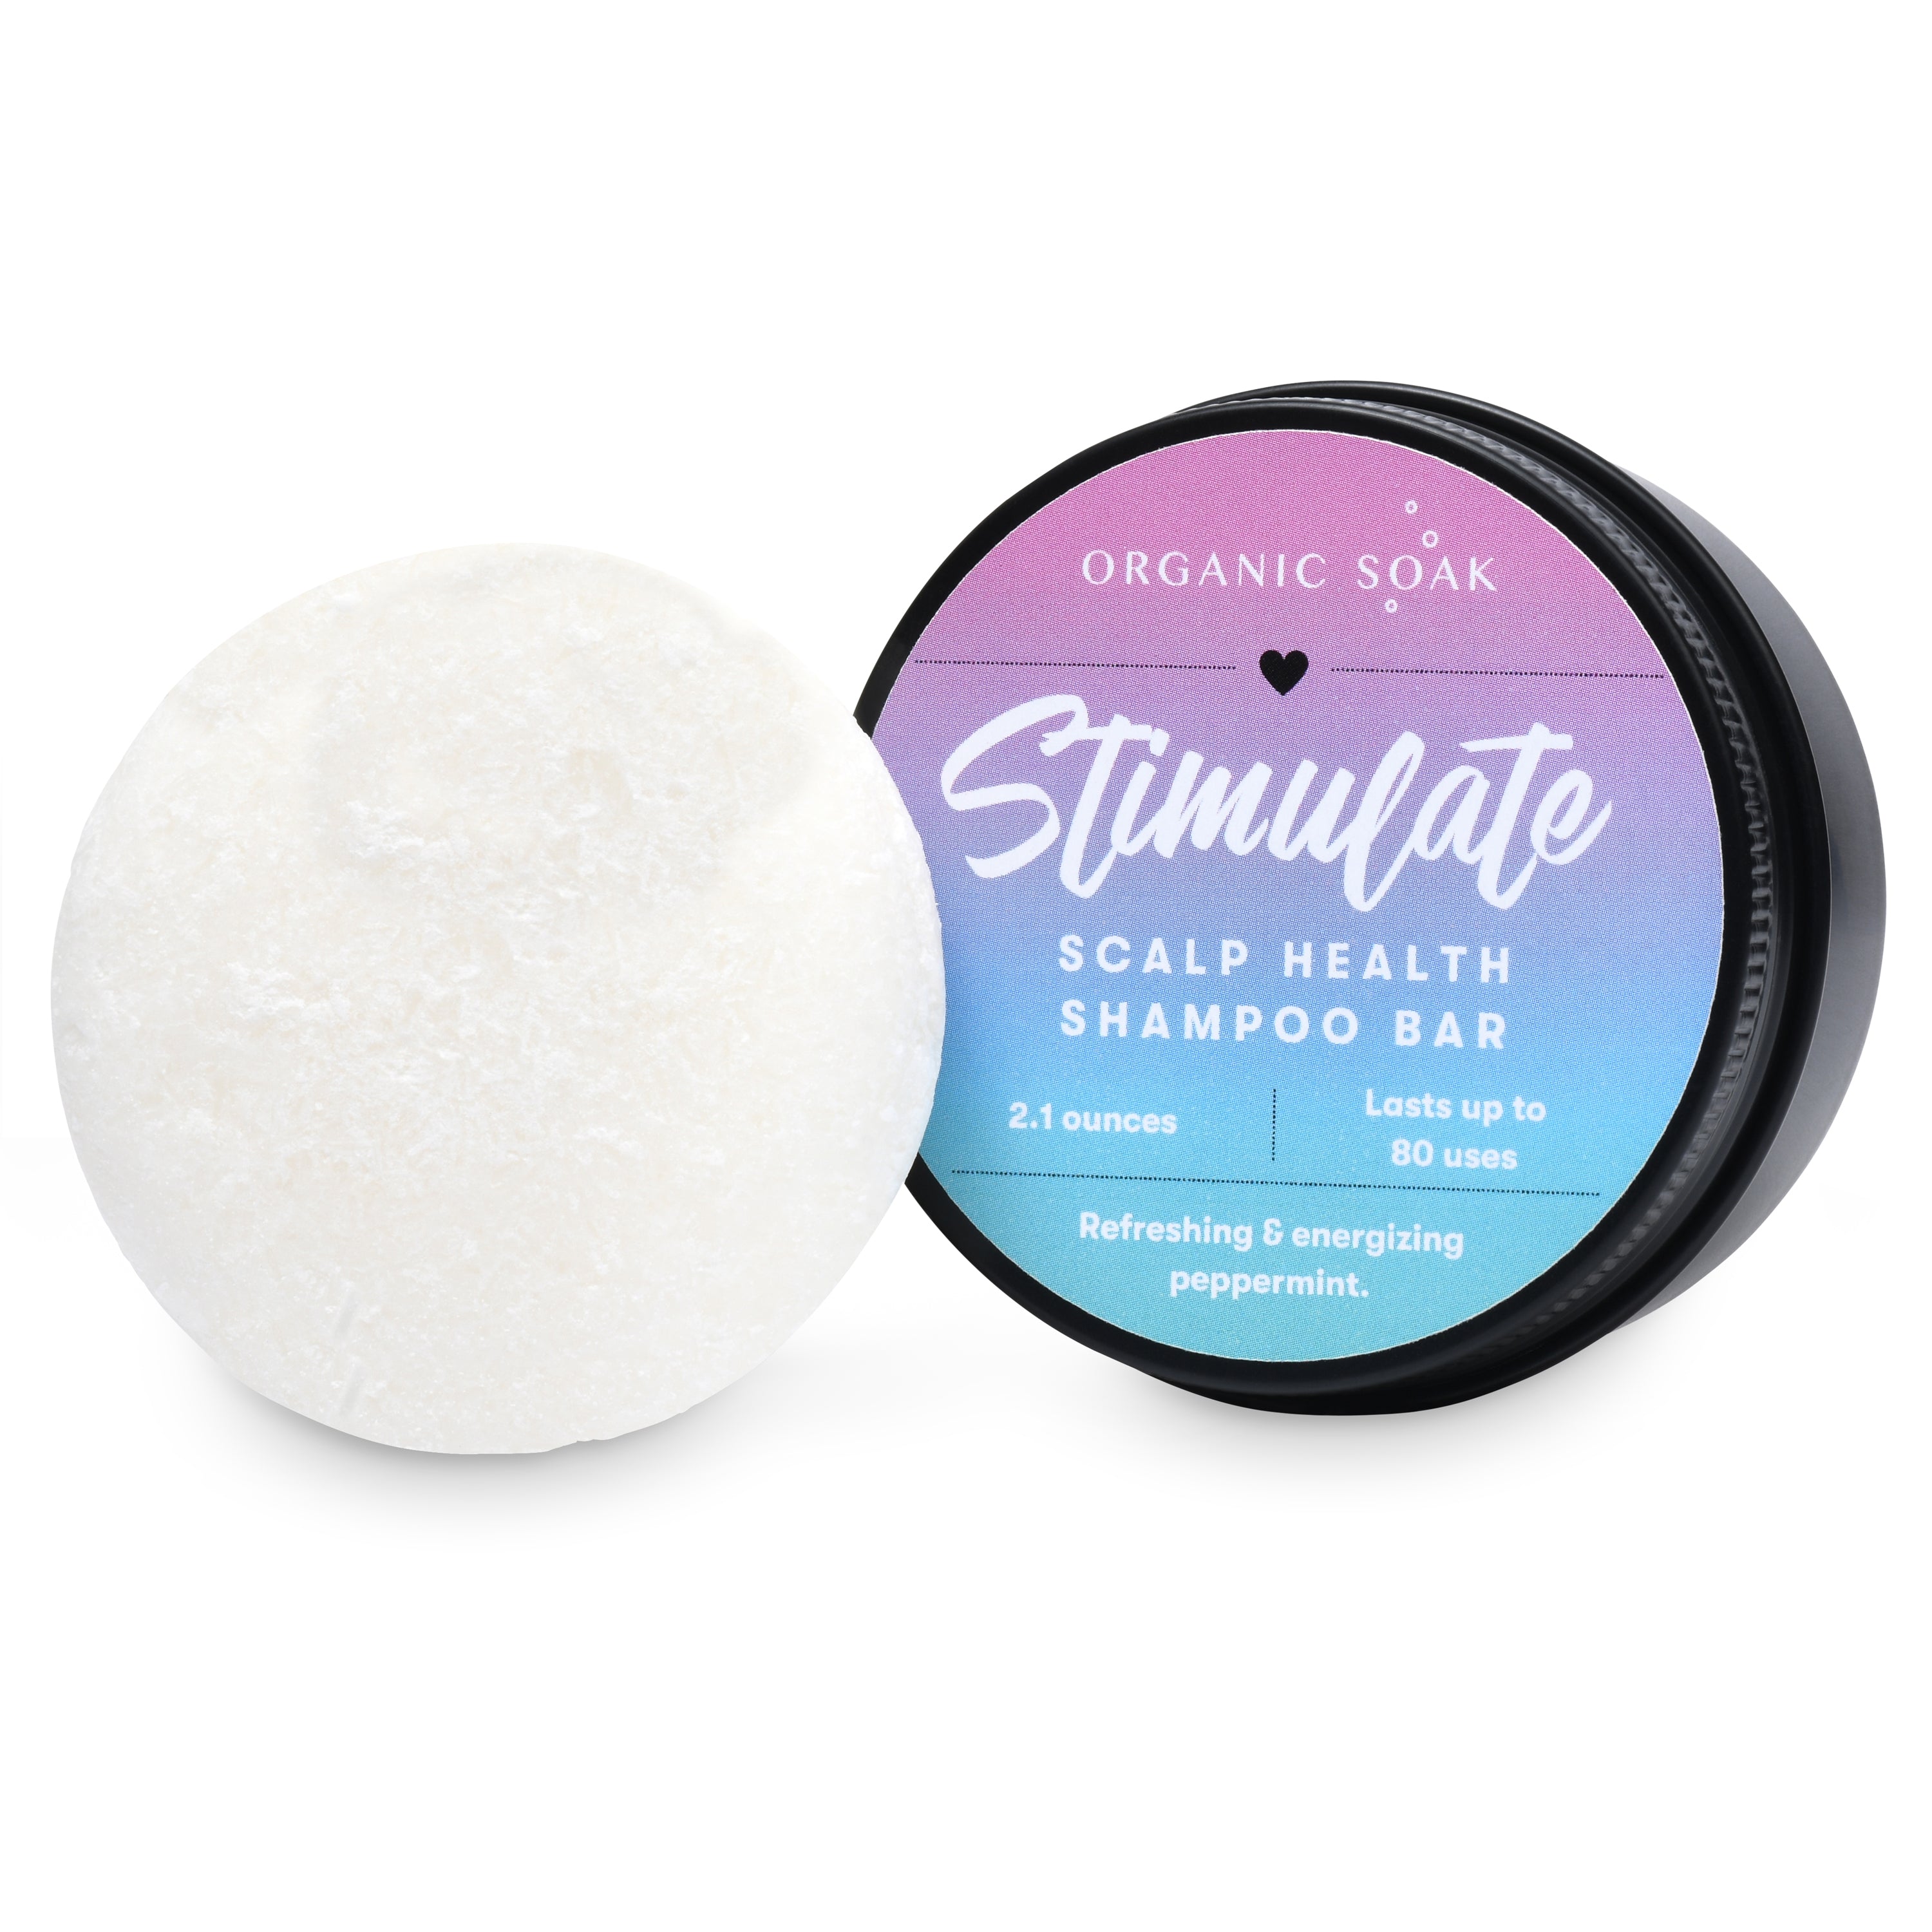 Stimulate Scalp Health Shampoo Bar